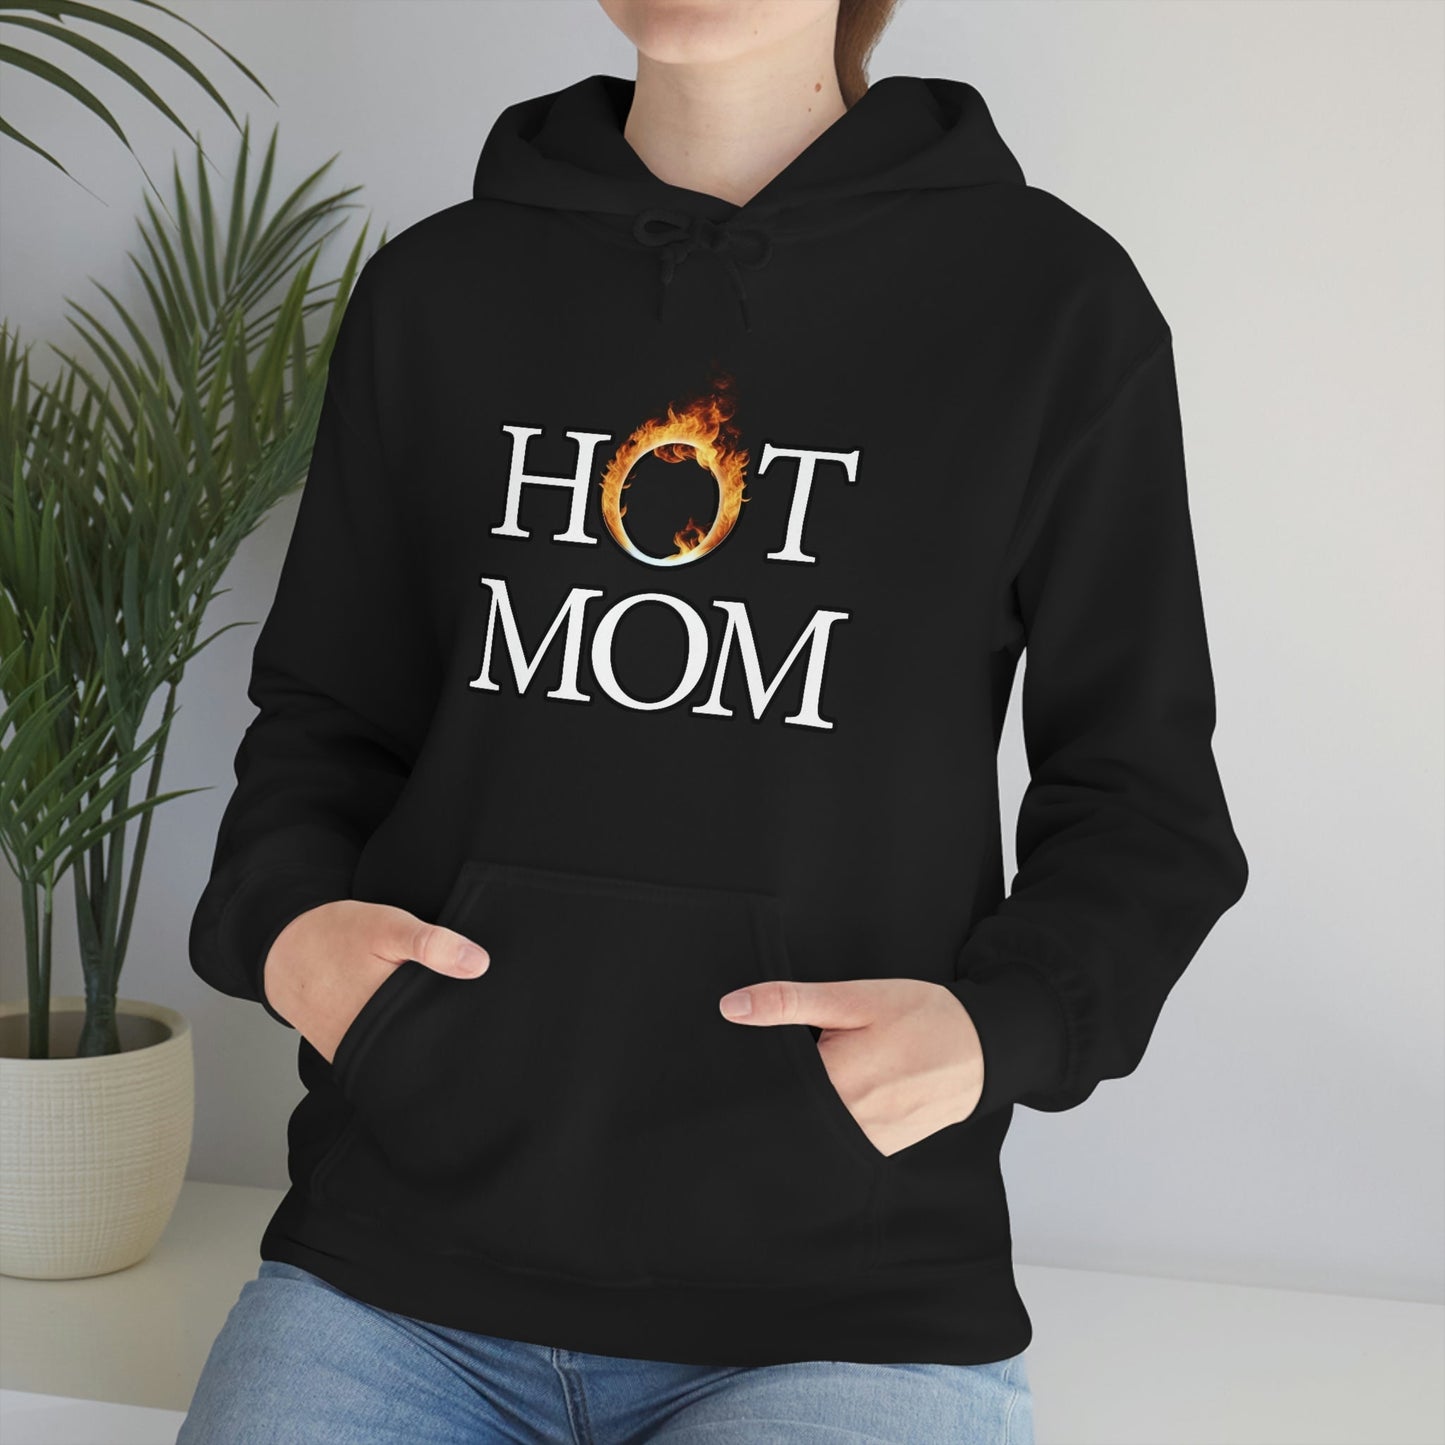 Hot Mom Hoodie - Bind on Equip - 13357193201303696534